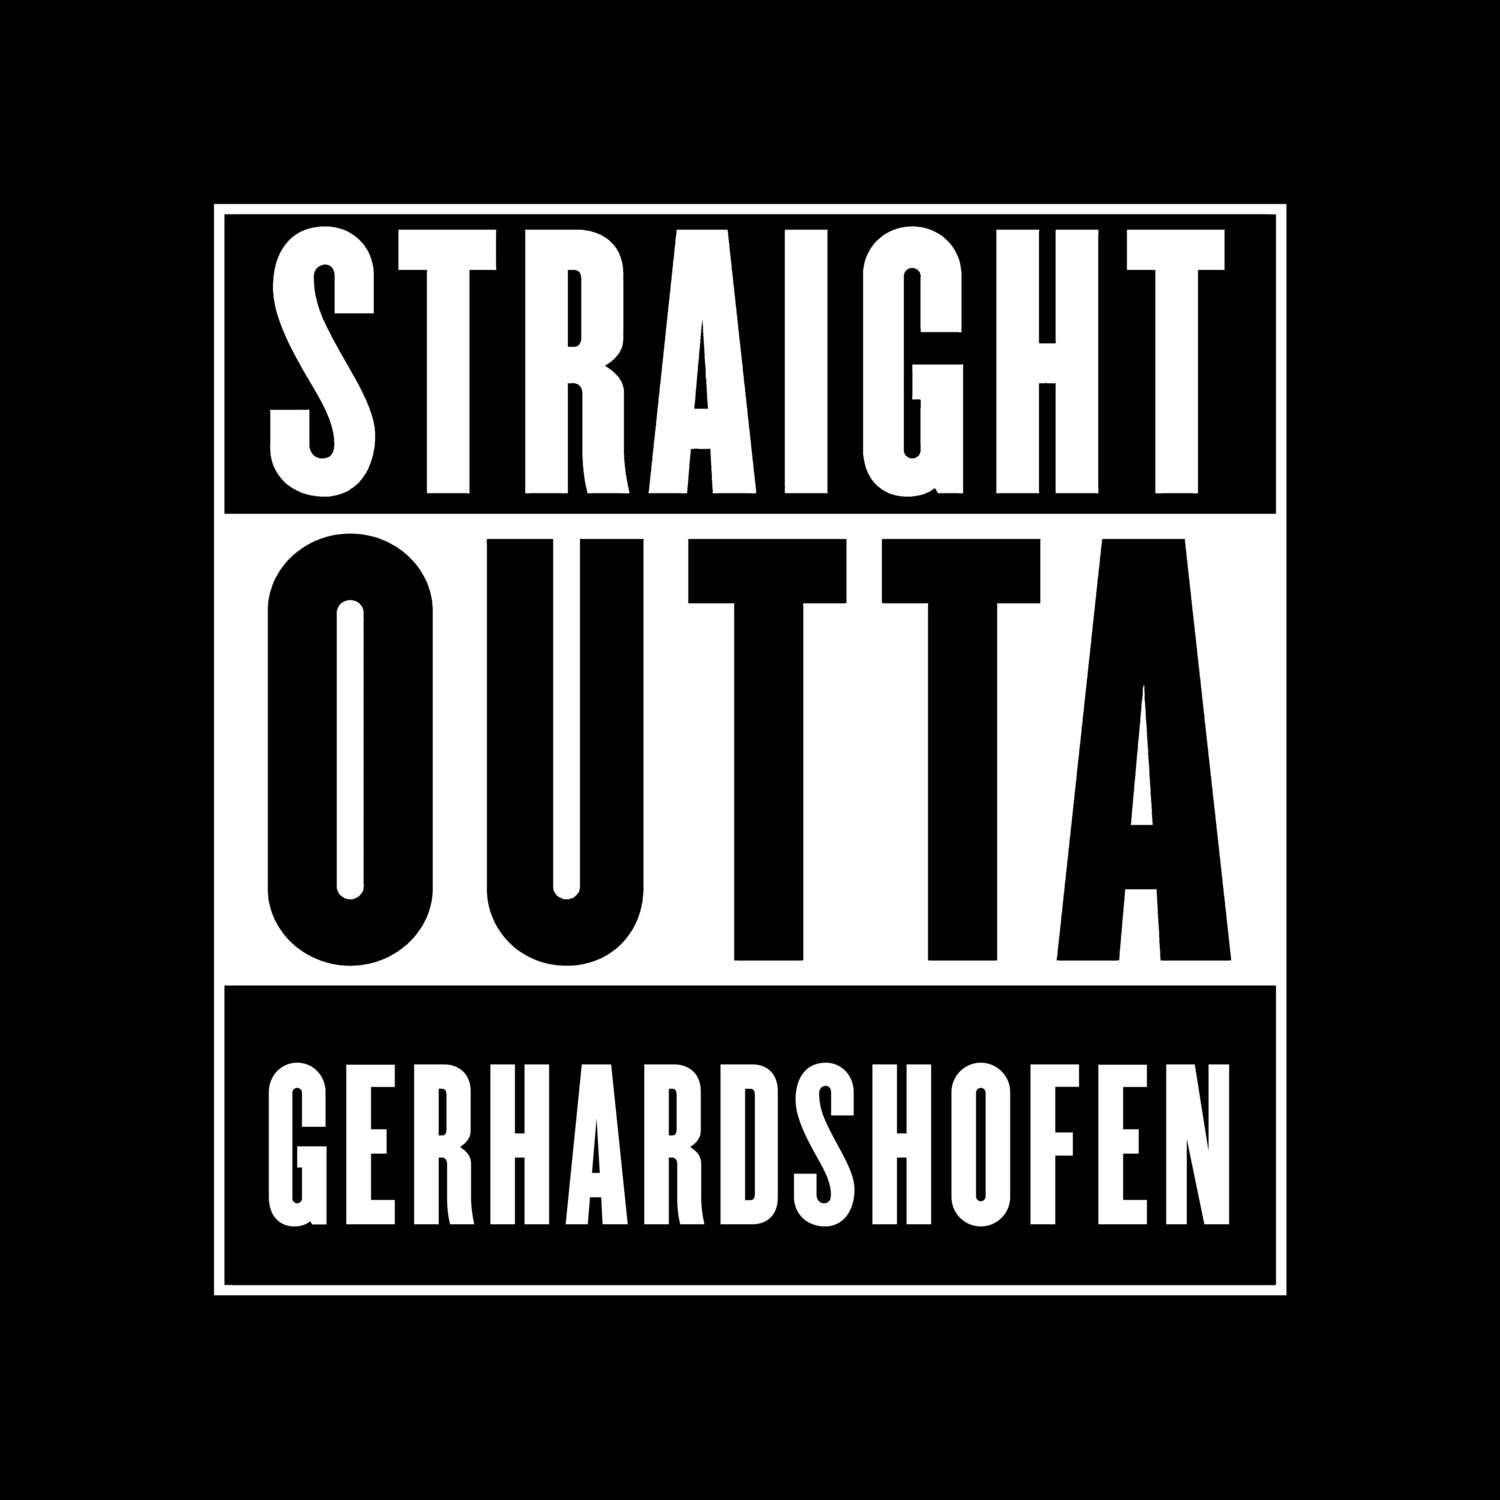 Gerhardshofen T-Shirt »Straight Outta«